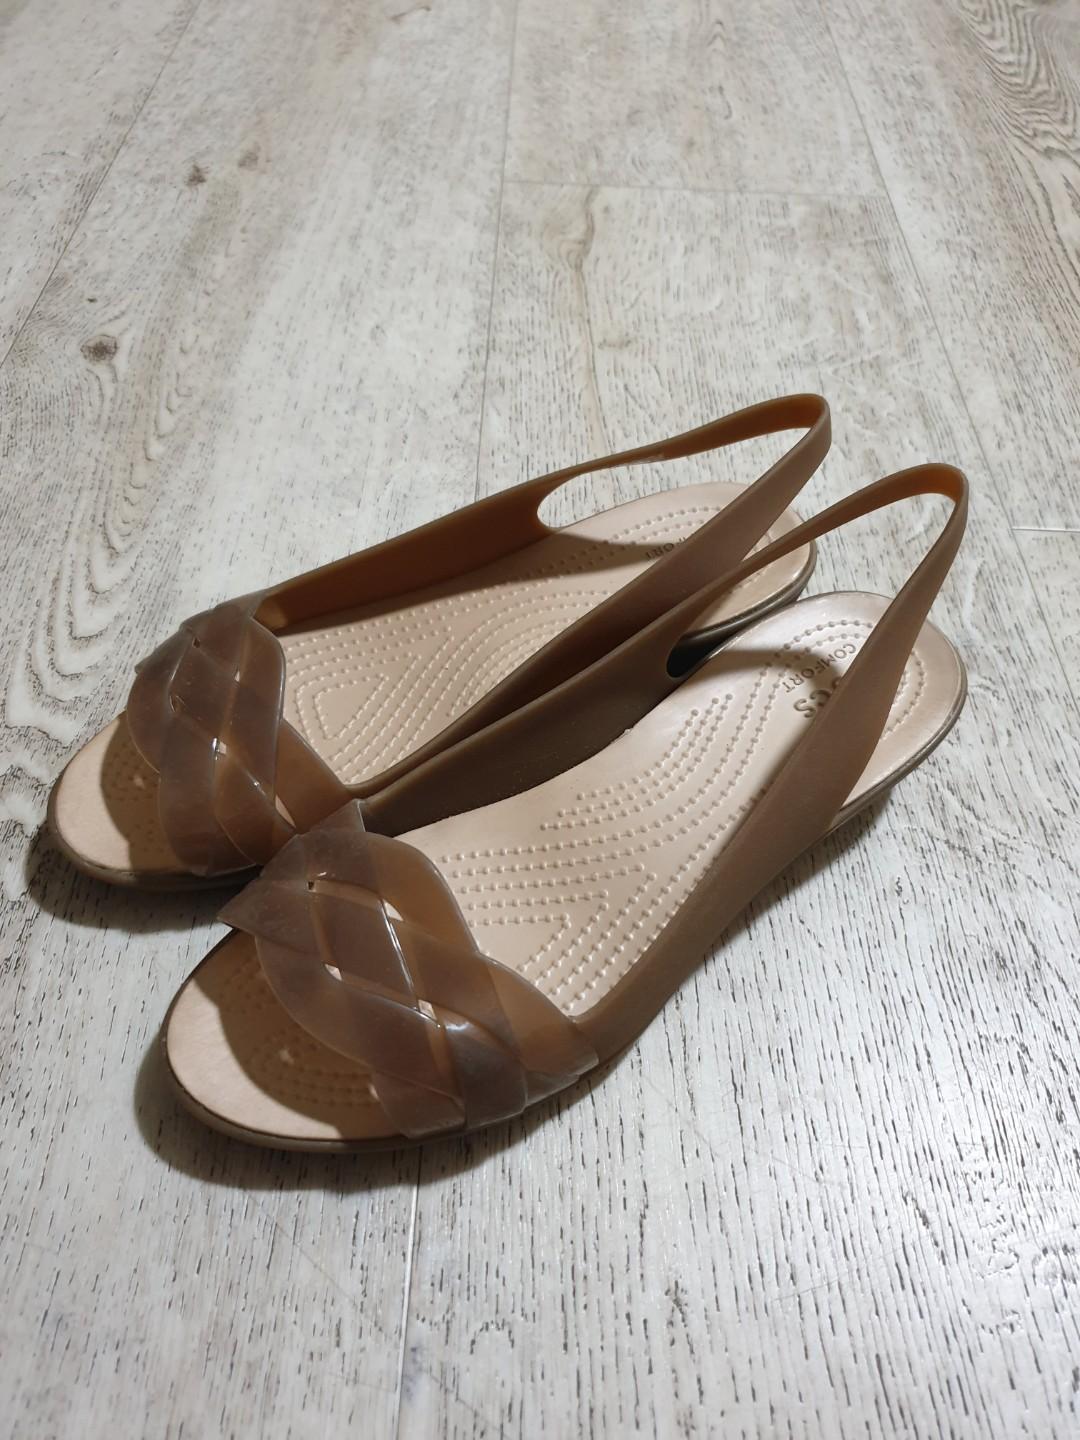 Crocs comfort slip-on shoes, Women's 